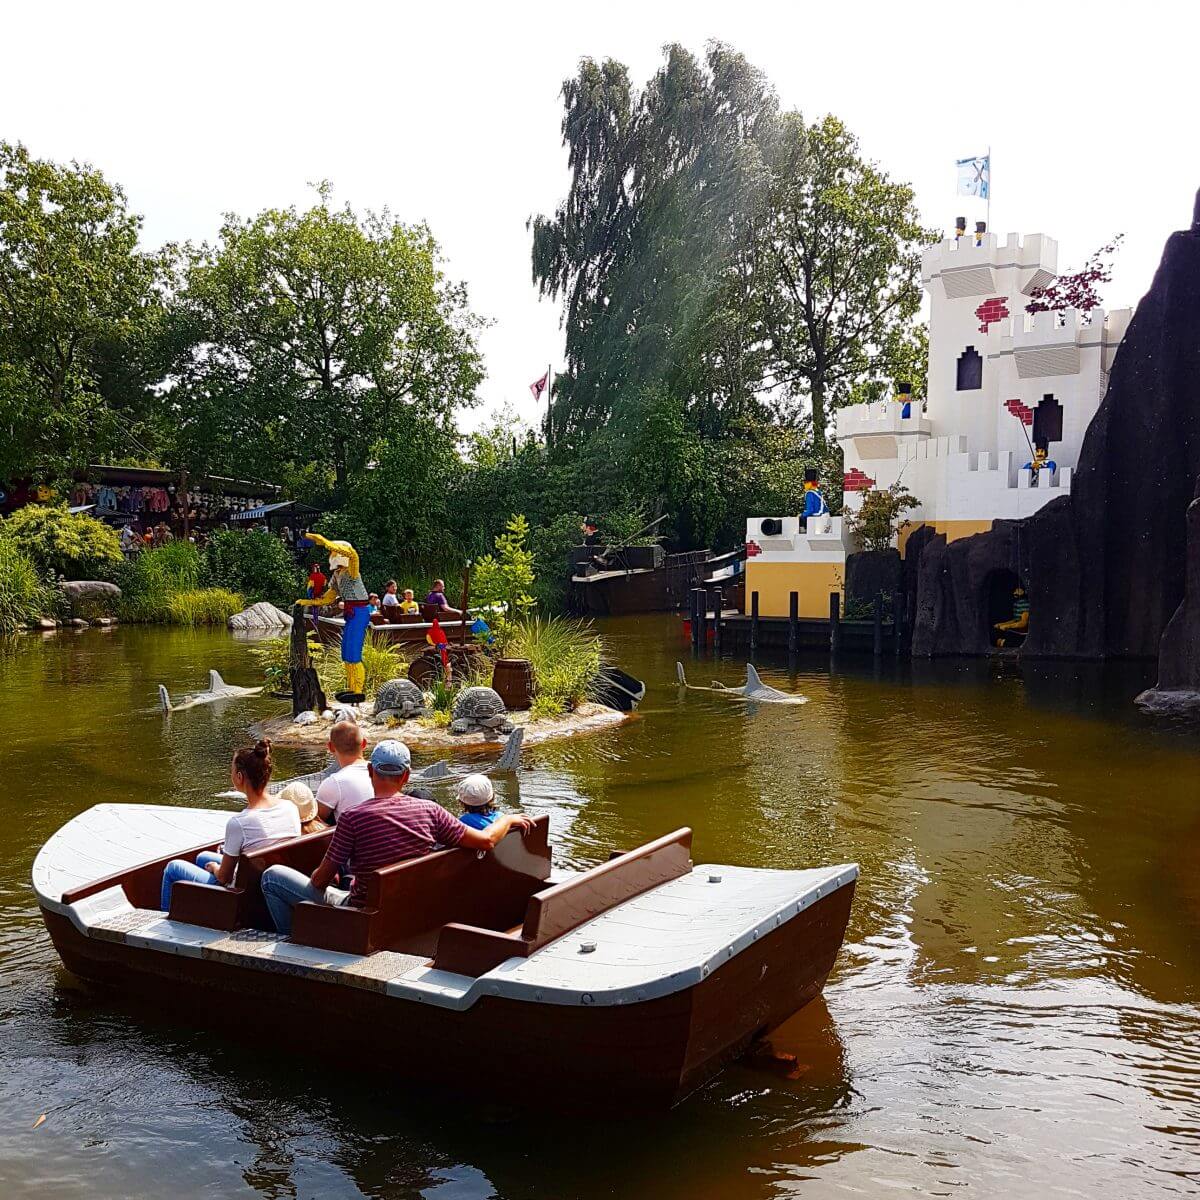 Legoland met kinderen: alles wat je wil weten, Pirate Land #leukmetkids #legoland #Denemarken #kinderen